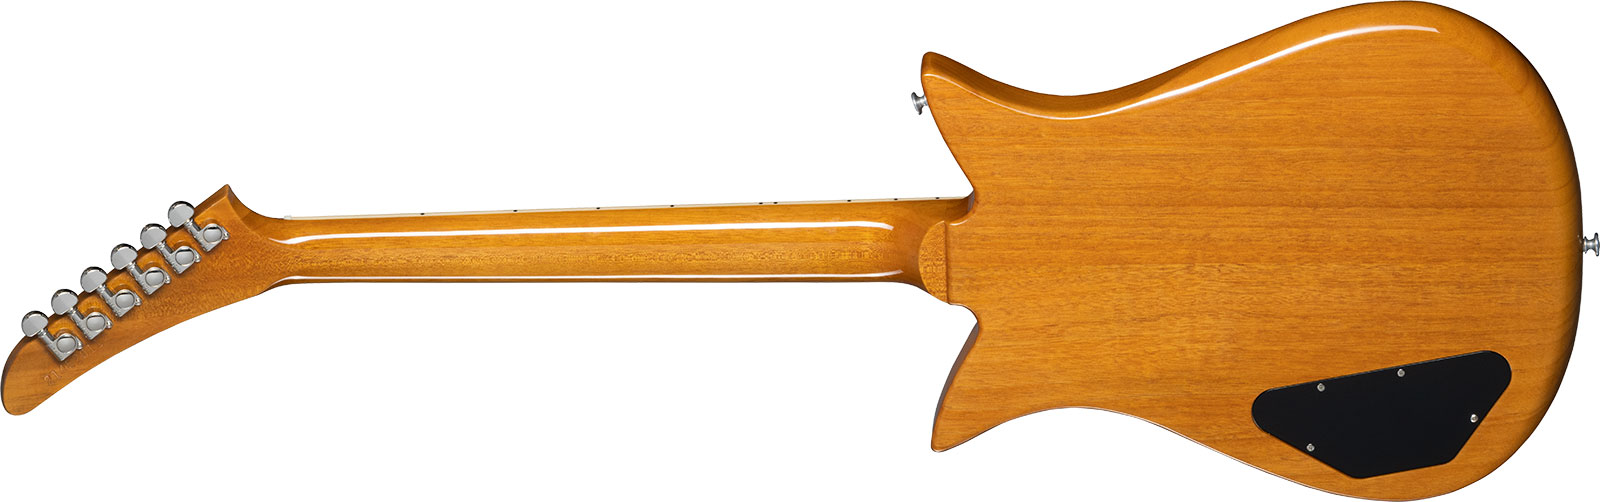 Gibson Theodore Standard Original 2h Ht Rw - Antique Natural - Guitare Électrique RÉtro Rock - Variation 1